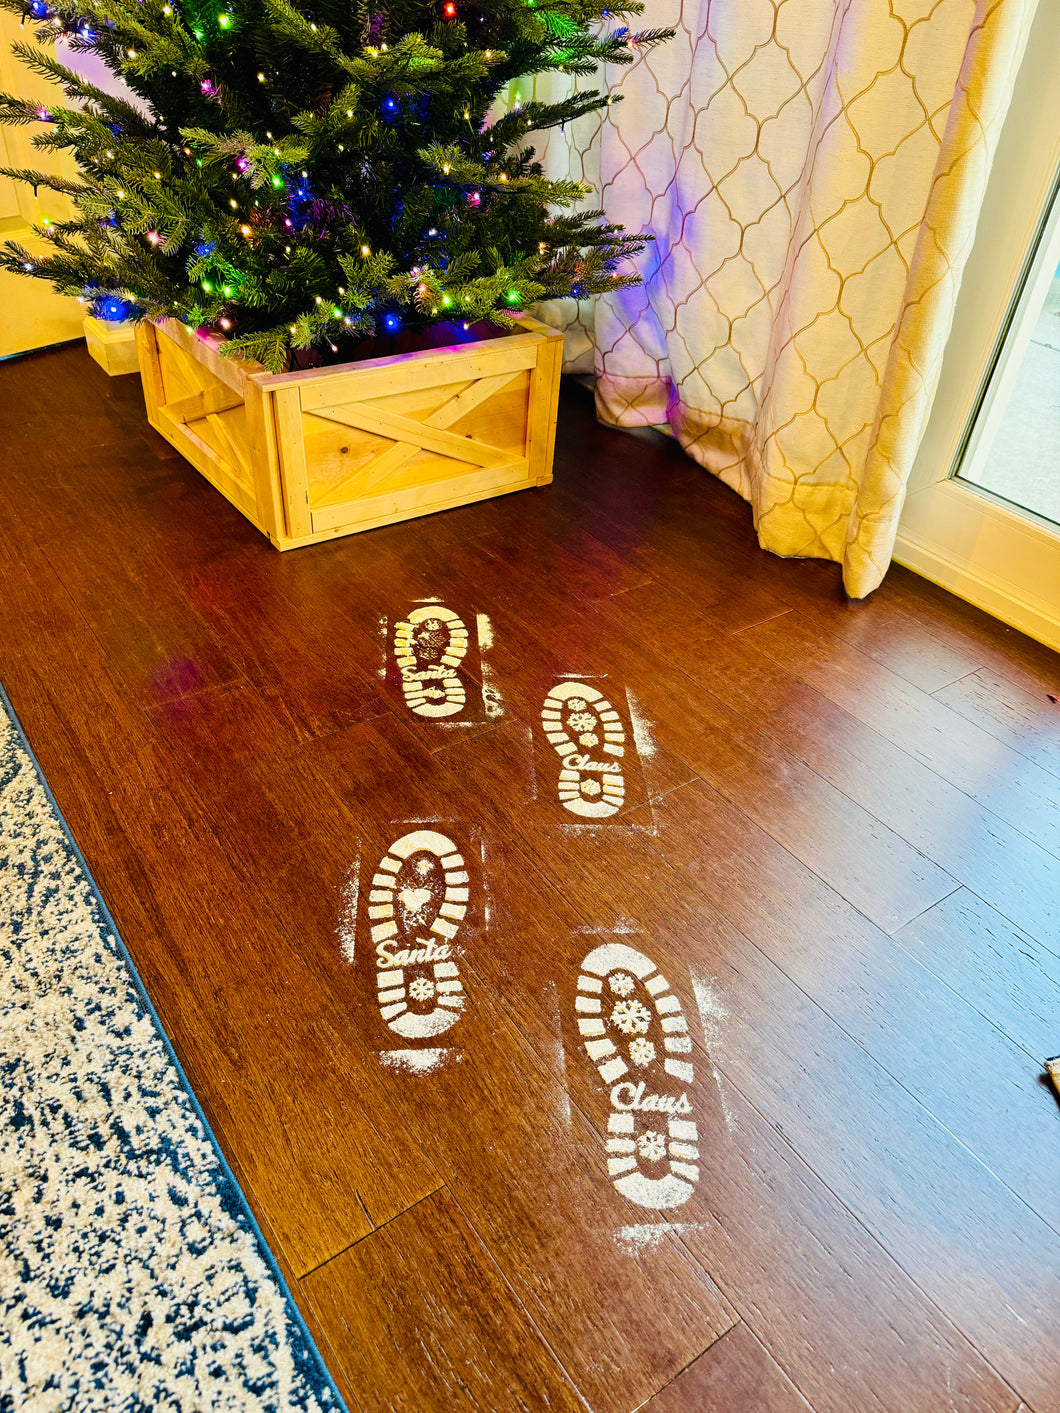 Santa Footprints Stencil